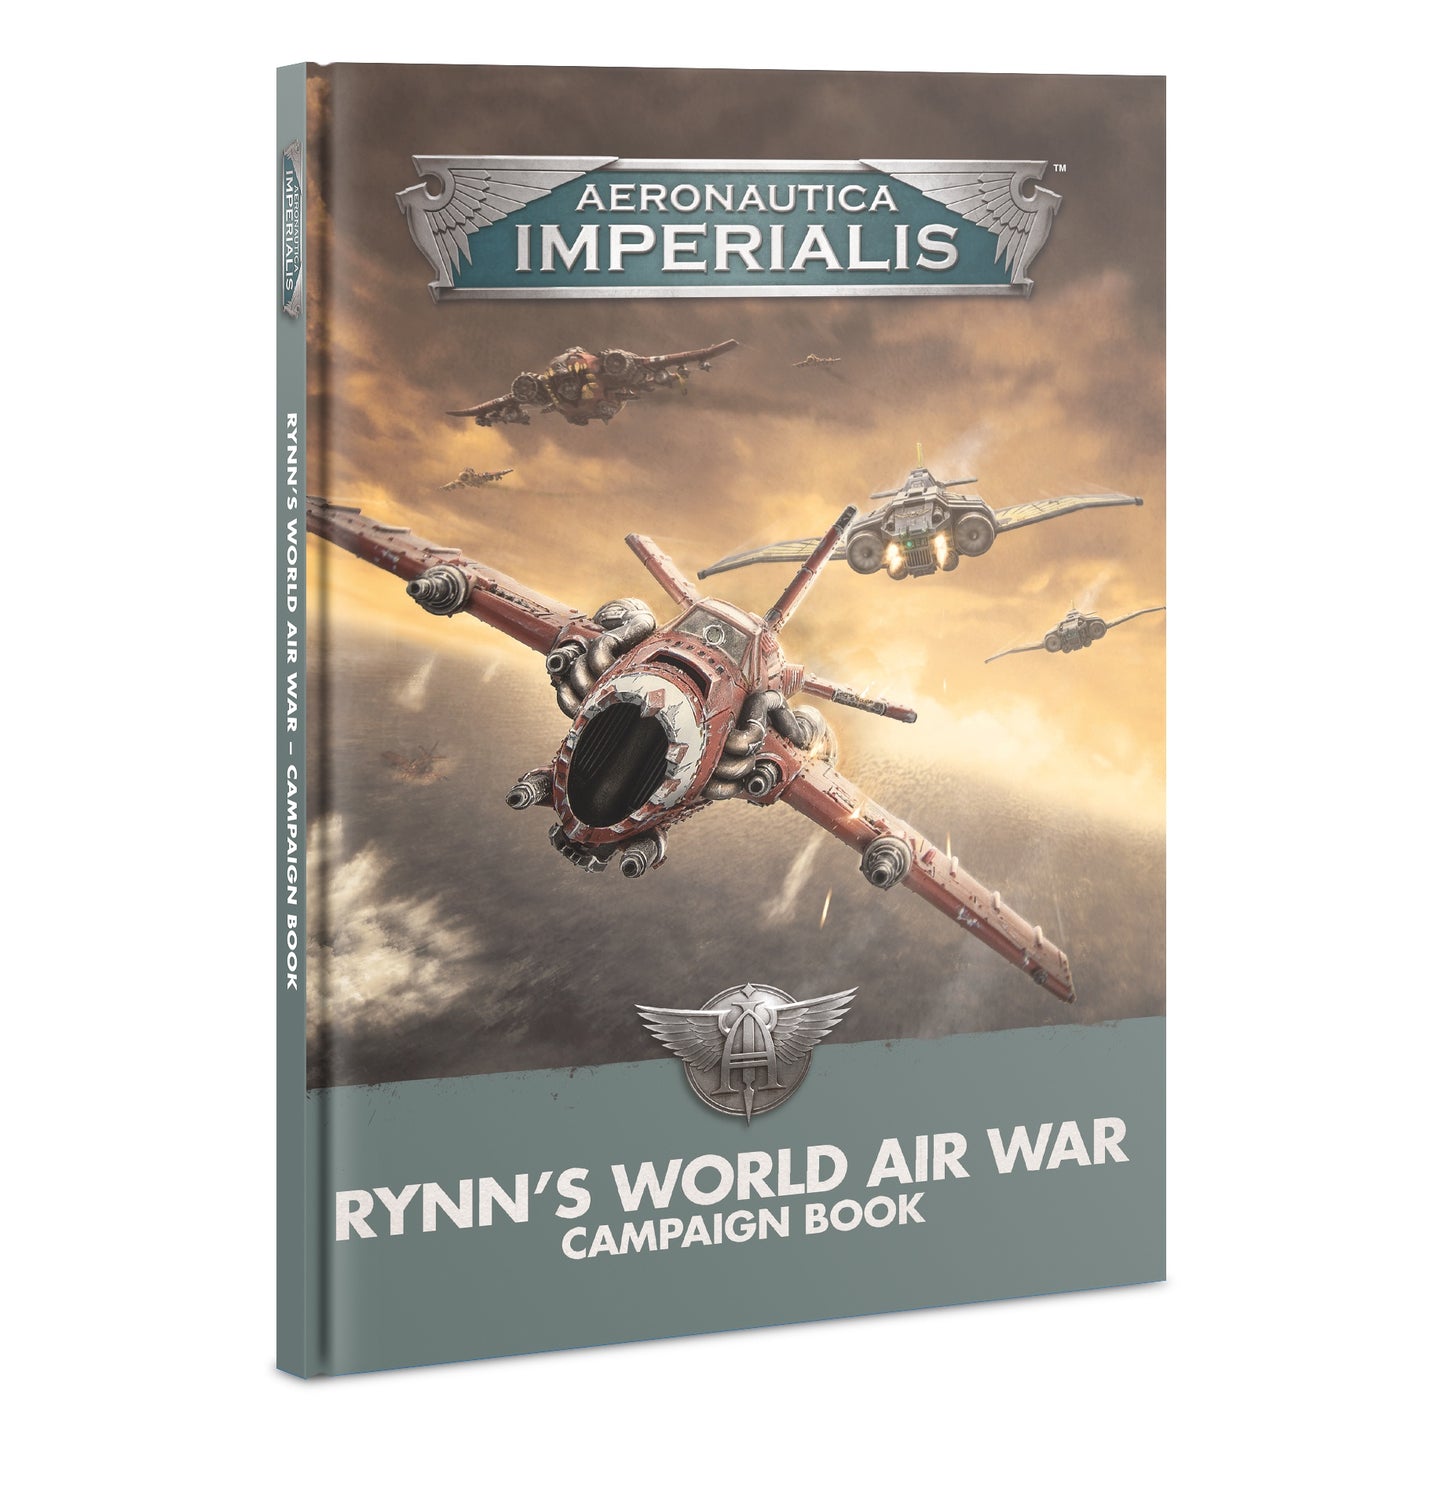 Rynns World Air War Campaign Book